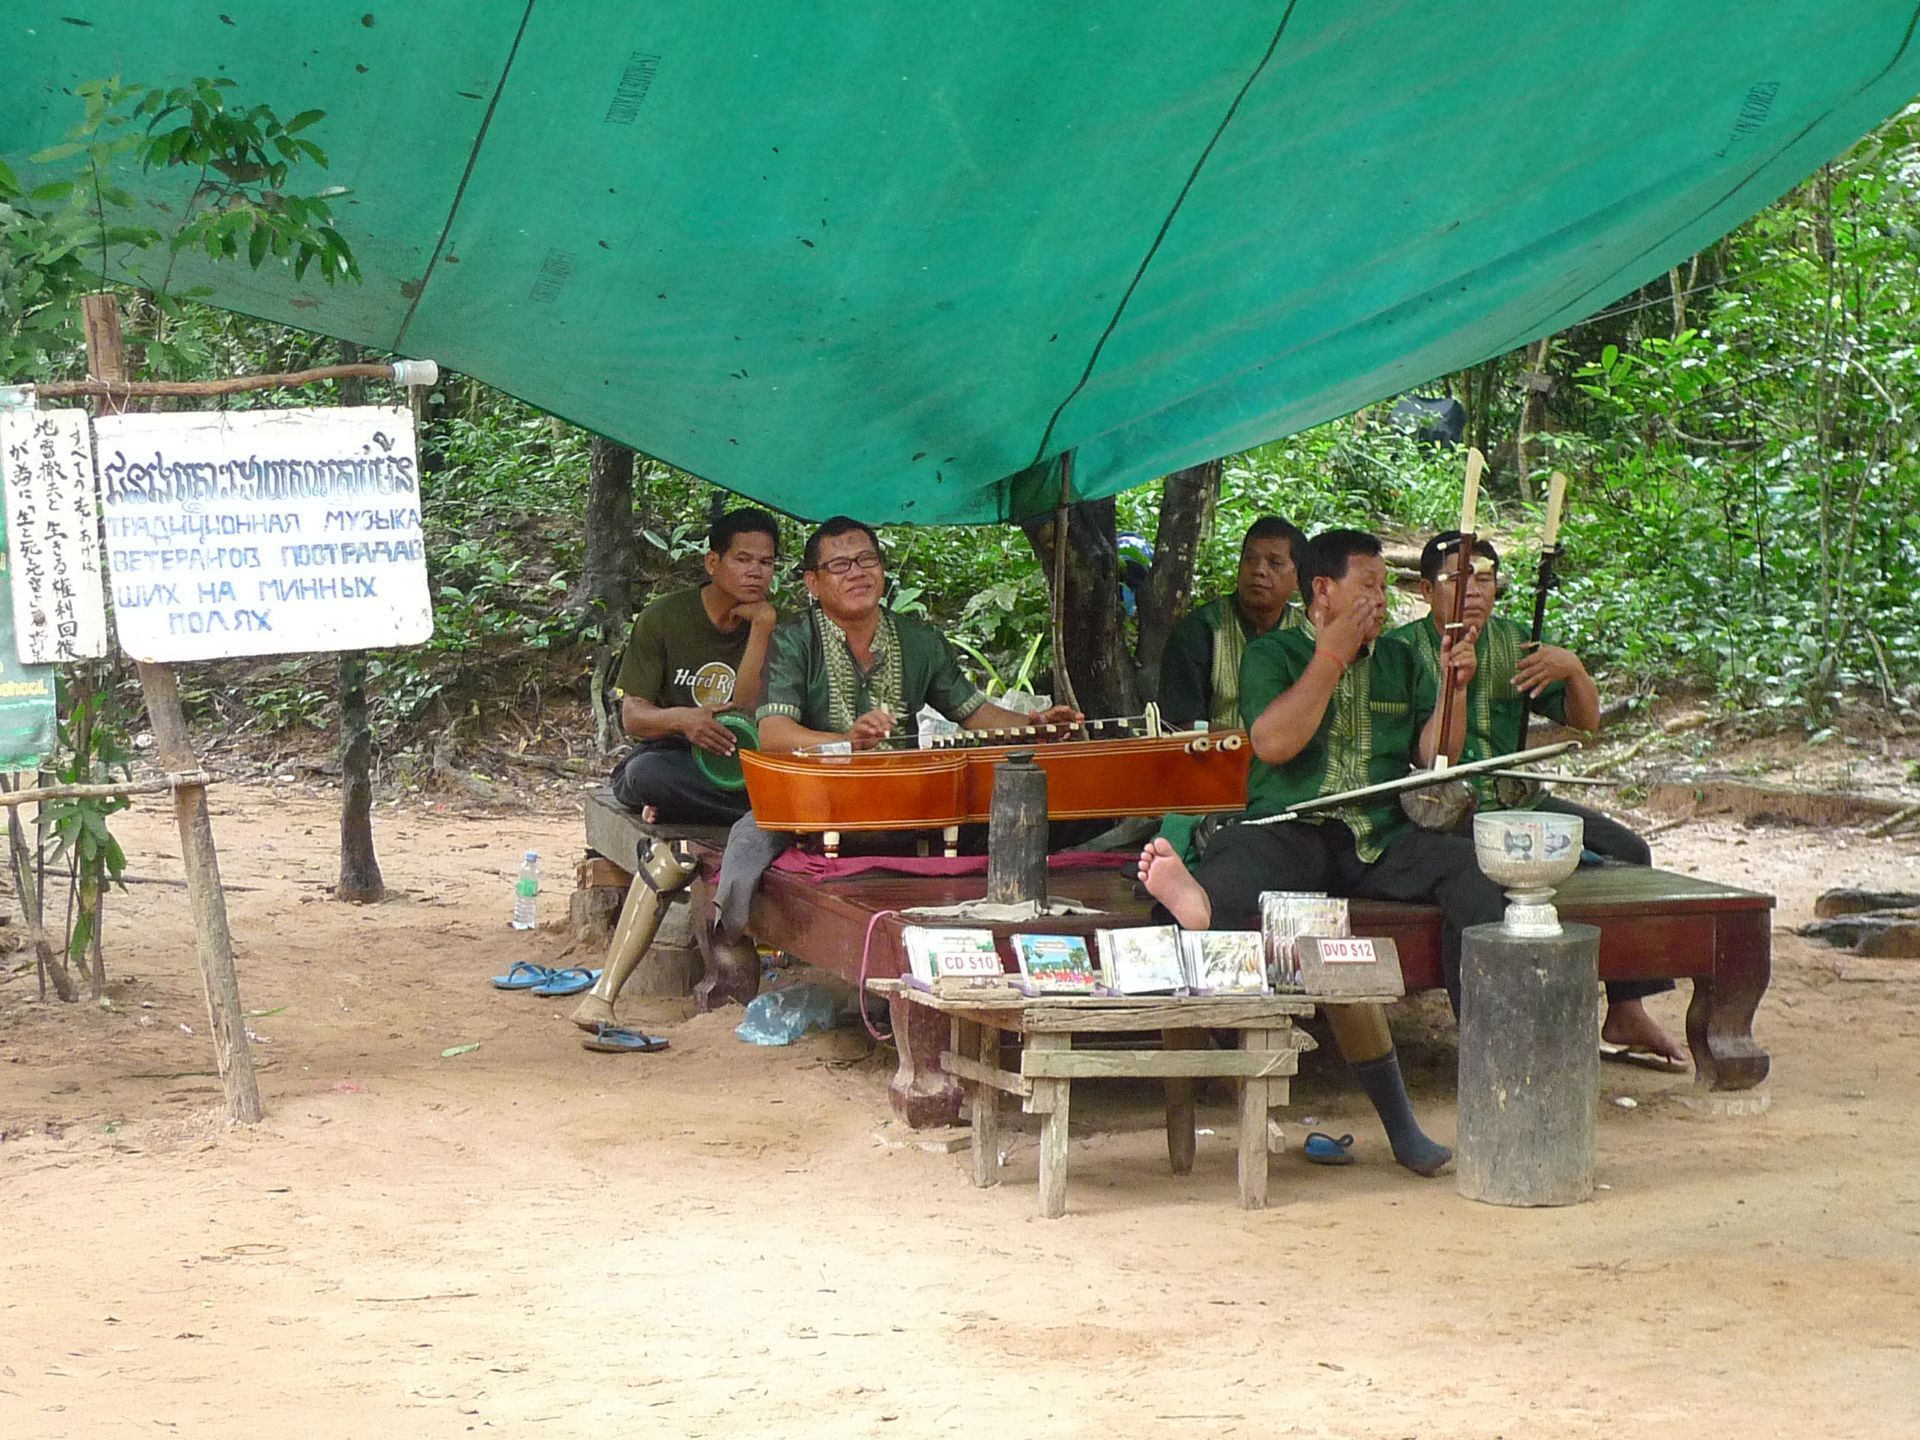 2023柬埔寨民俗文化村游玩攻略,景区微缩了柬埔寨全国的景点...【去哪儿攻略】